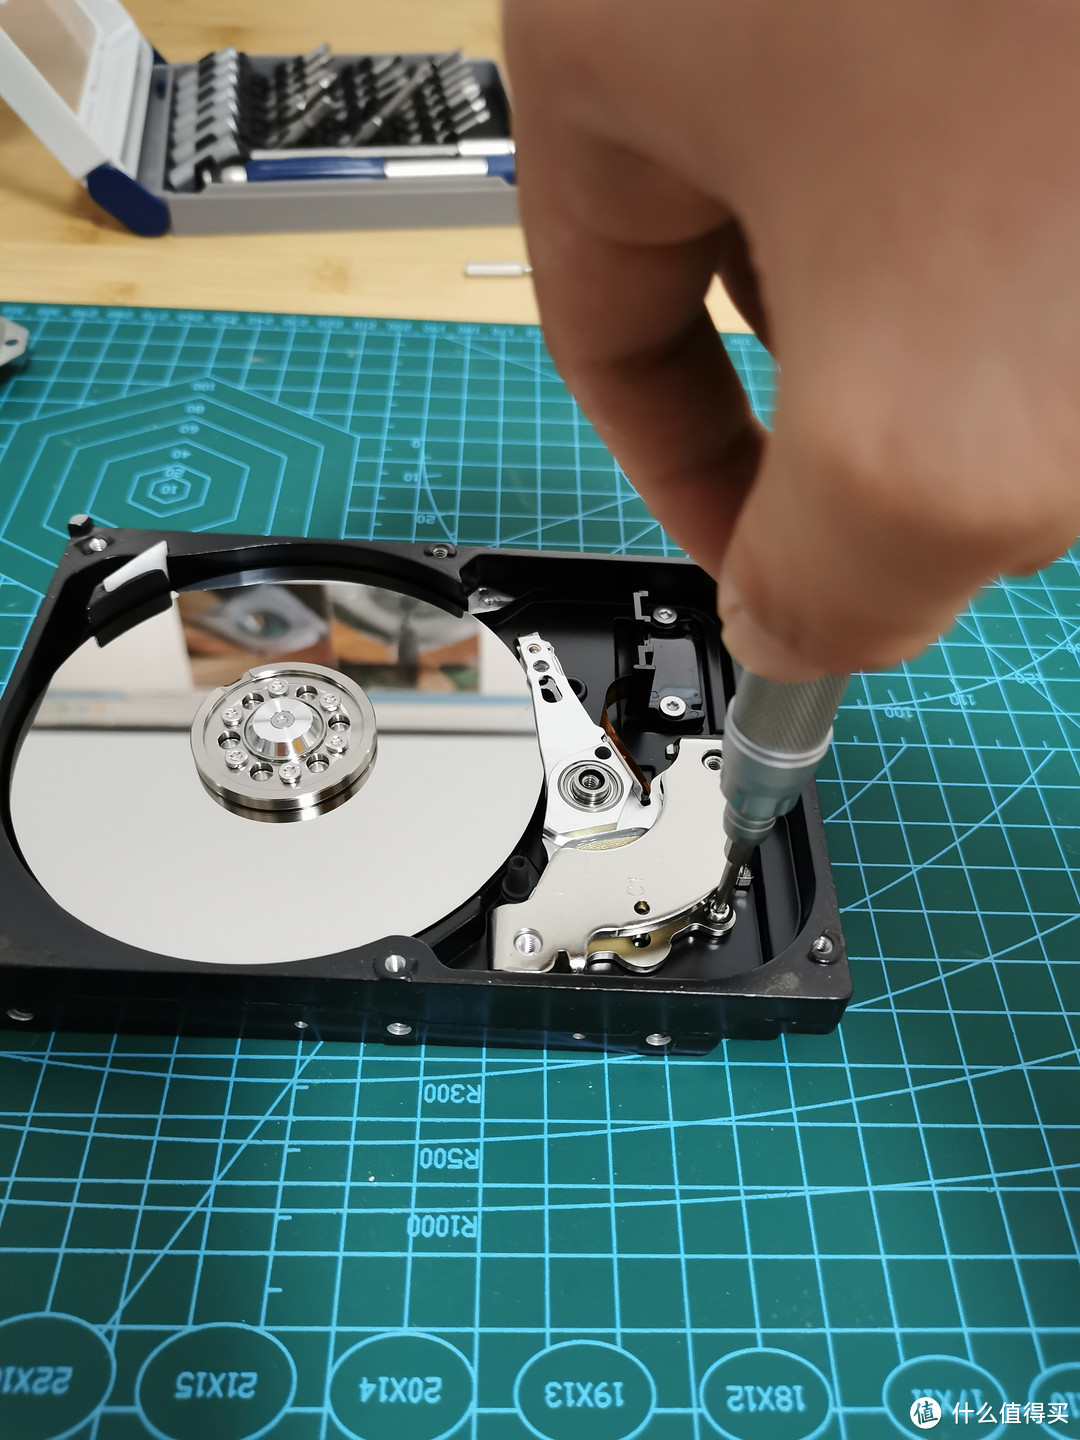 垃圾佬的精致物件：废旧硬盘DIY改造，化身时钟摆件